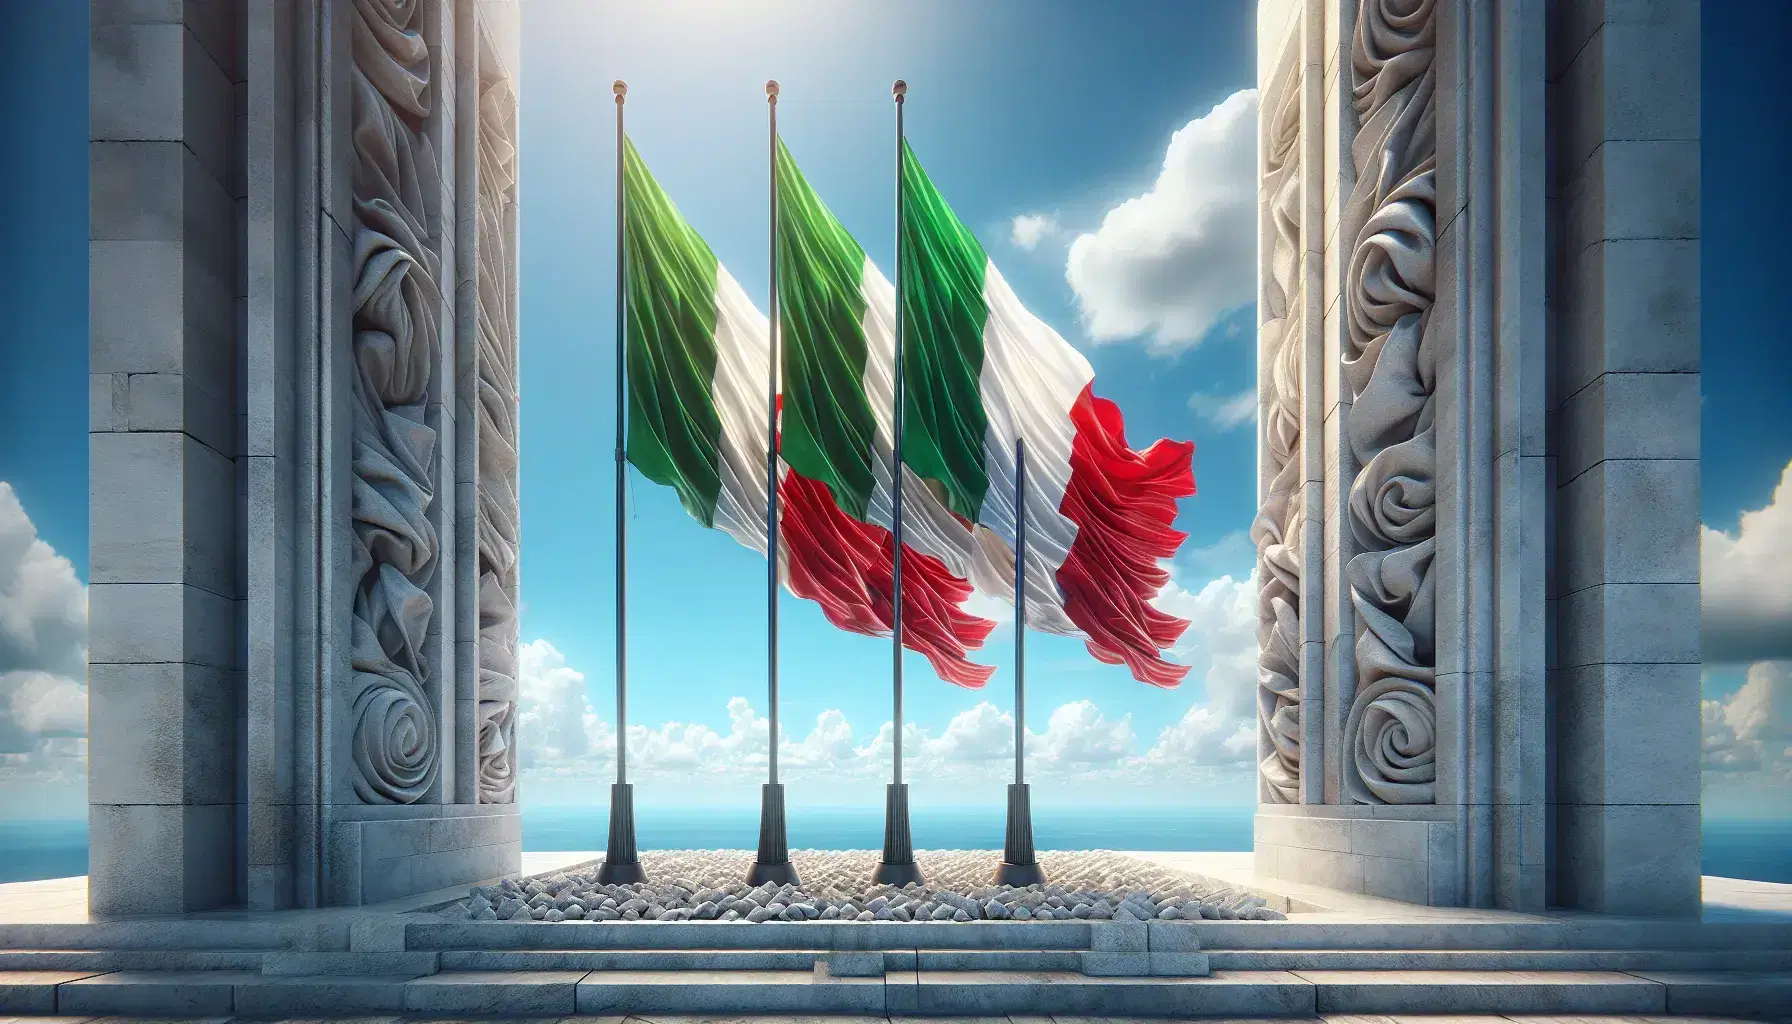 Tre bandiere italiane sventolano al vento su pali metallici, con sfondo di cielo azzurro e nuvole bianche, accanto a un monumento in marmo.